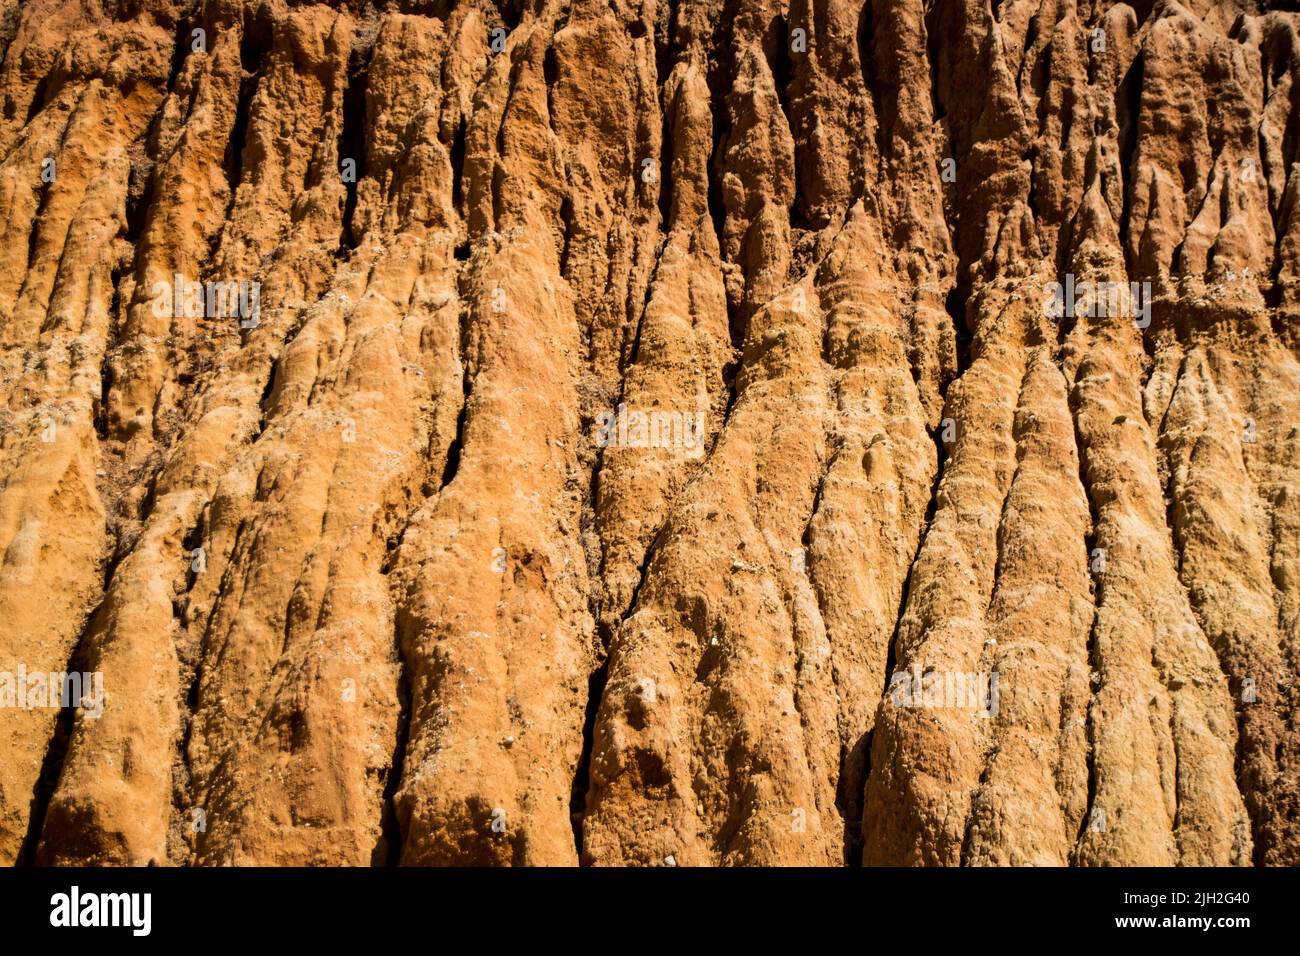 Acantilados de roca costera de primer plano, texturas y fondos abstractos. Senderos de agua en las paredes de los acantilados, patrones hechos por la erosión del agua. Acantilados de playa. Foto de stock